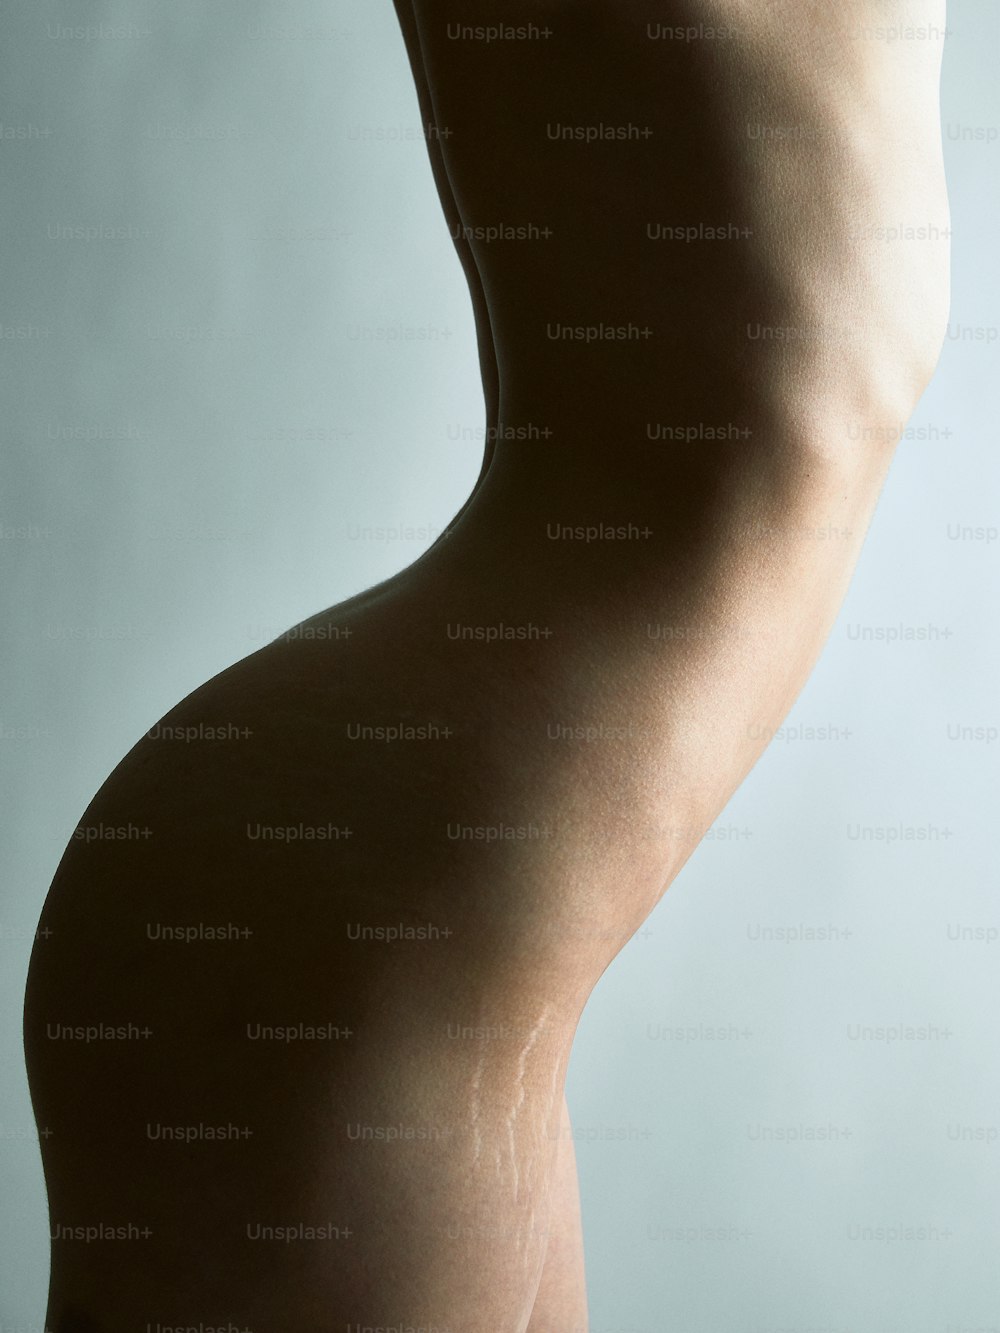 Der nackte Körper einer Frau ist vor einem grauen Hintergrund zu sehen